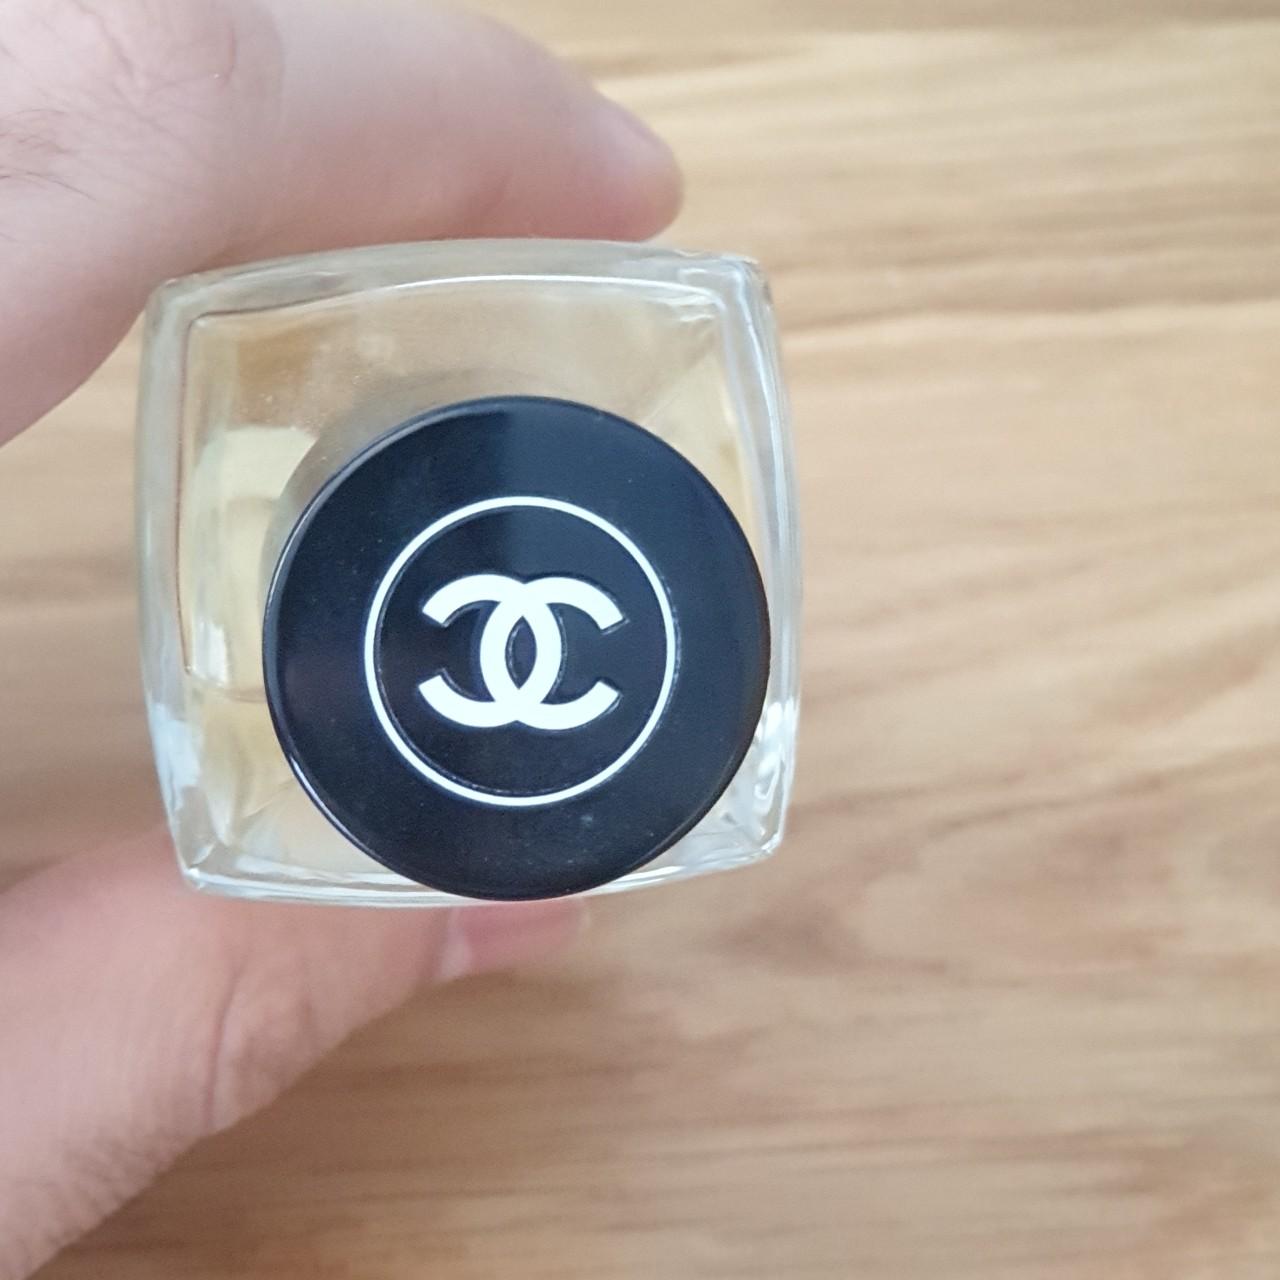 CHANEL Les Exclusifs de Chanel - Eau de Parfum - Depop